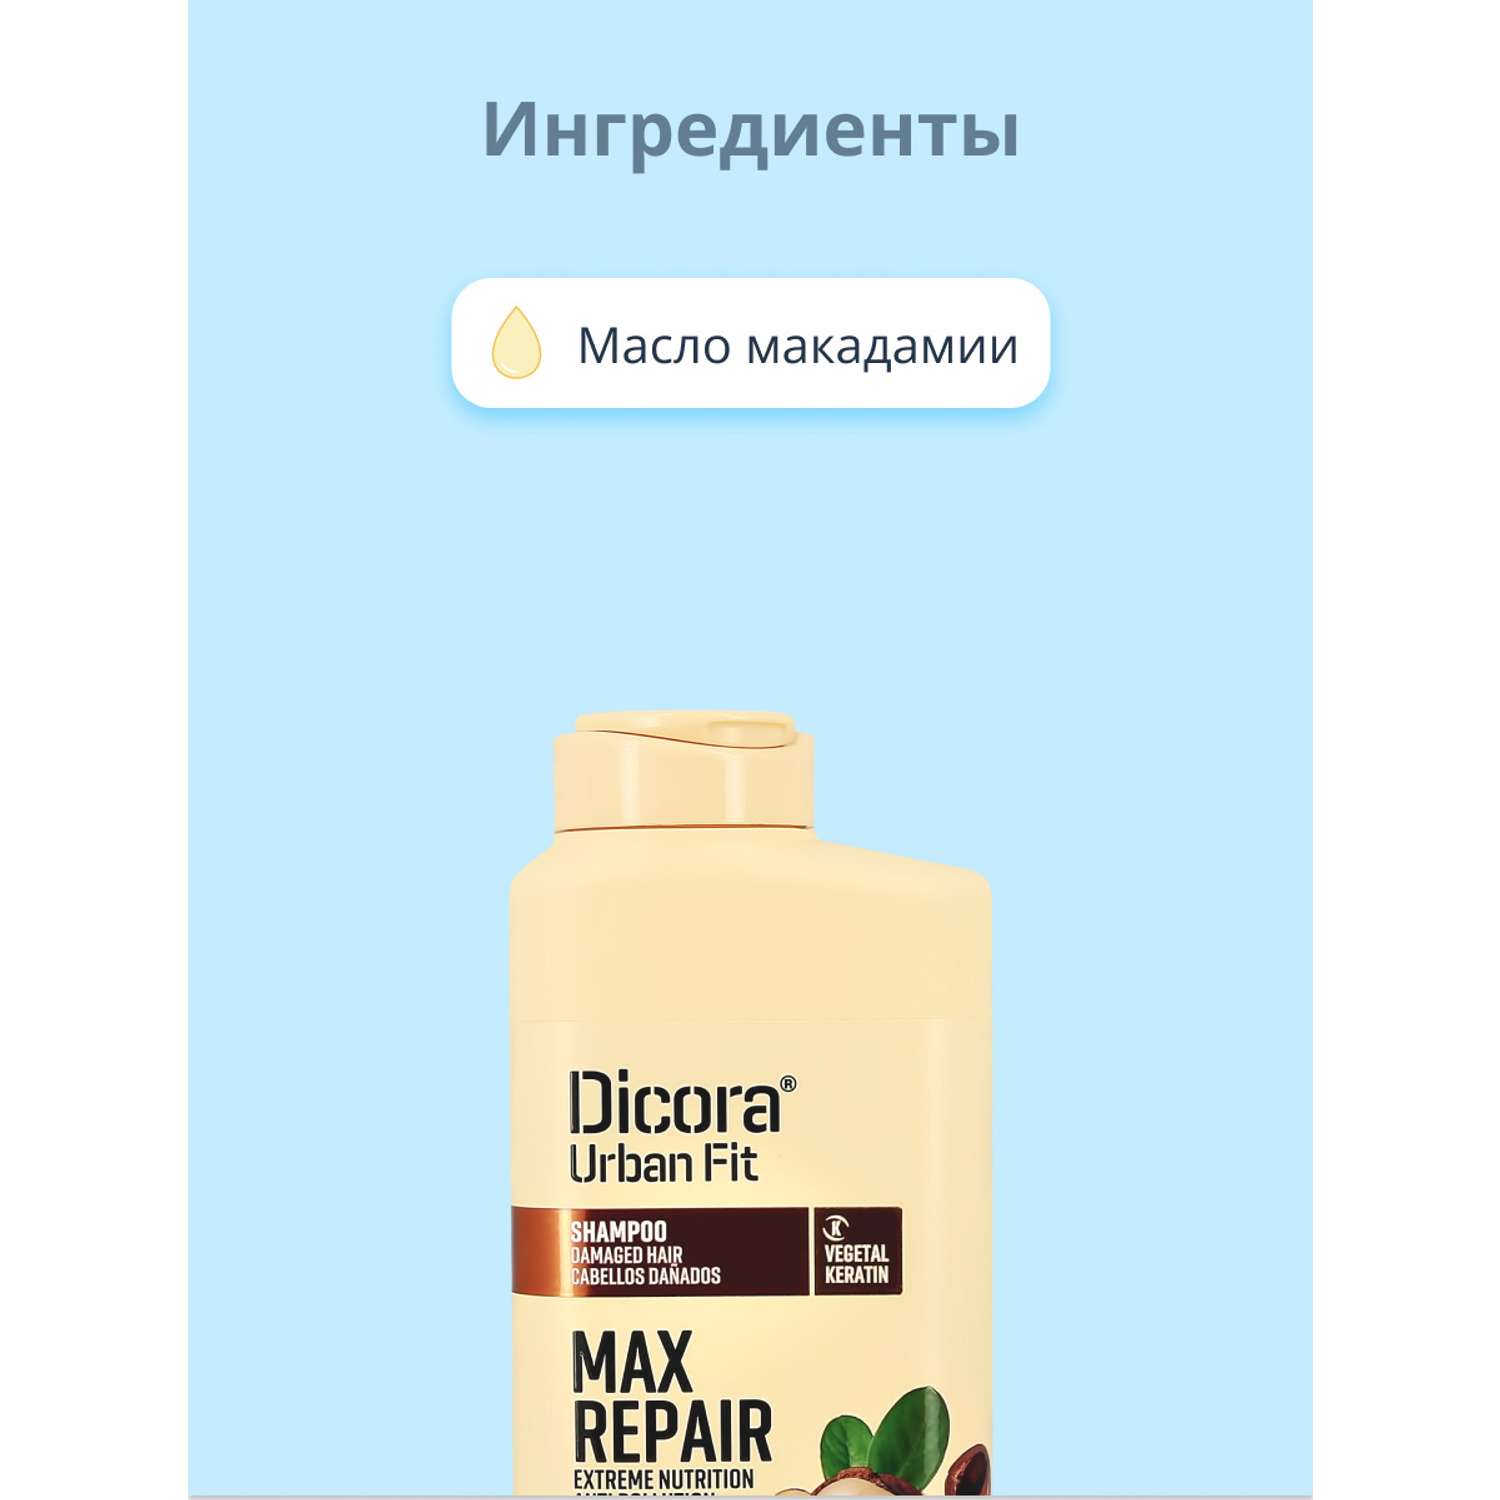 Шампунь DICORA URBAN FIT с маслом макадамии экстра восстановление и питание 400 мл - фото 2